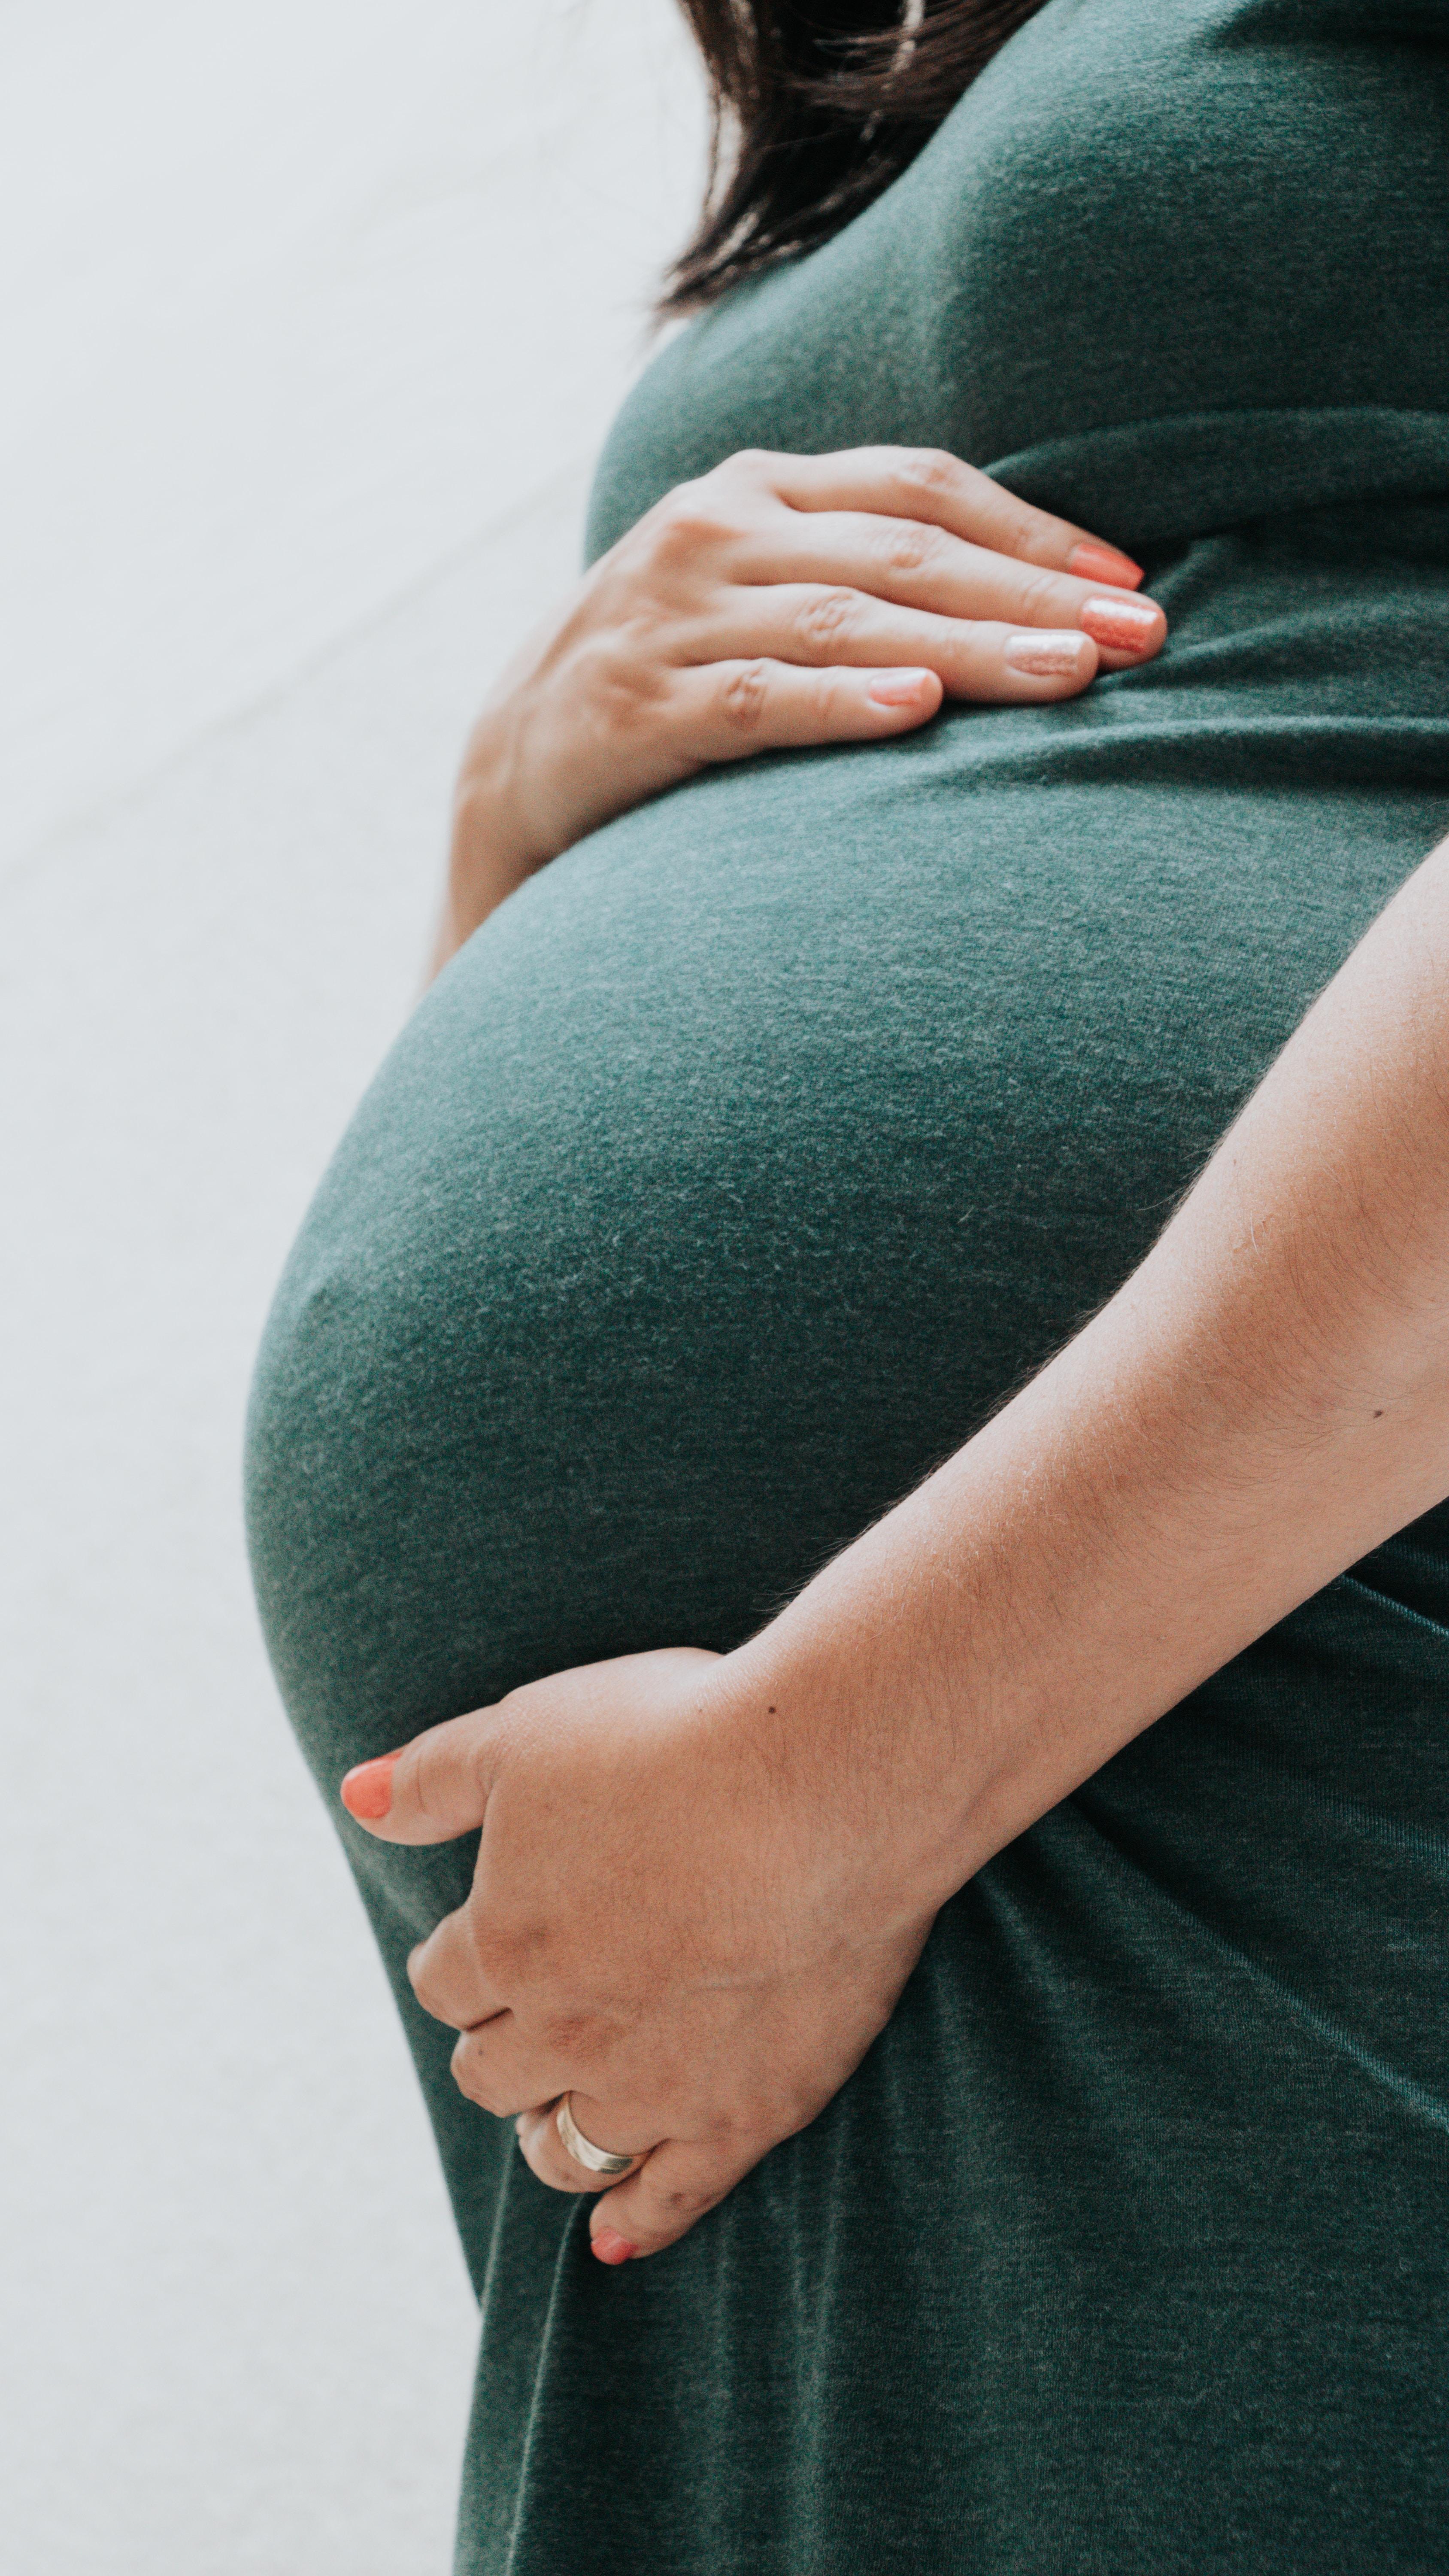 Niedoczynność tarczycy a ciąża - jak ta choroba wpływa na płodność i ciążę? Niedoczynność tarczycy a zajście w ciążę – zagrożenia. Hashimoto a ciąża. Jak niedoczynność tarczycy wpływa na rozwój dziecka? Hashimoto a ciąża. Jak zajść w ciążę i urodzić zdrowe dziecko przy autoimmunologicznym zapaleniu tarczycy? 